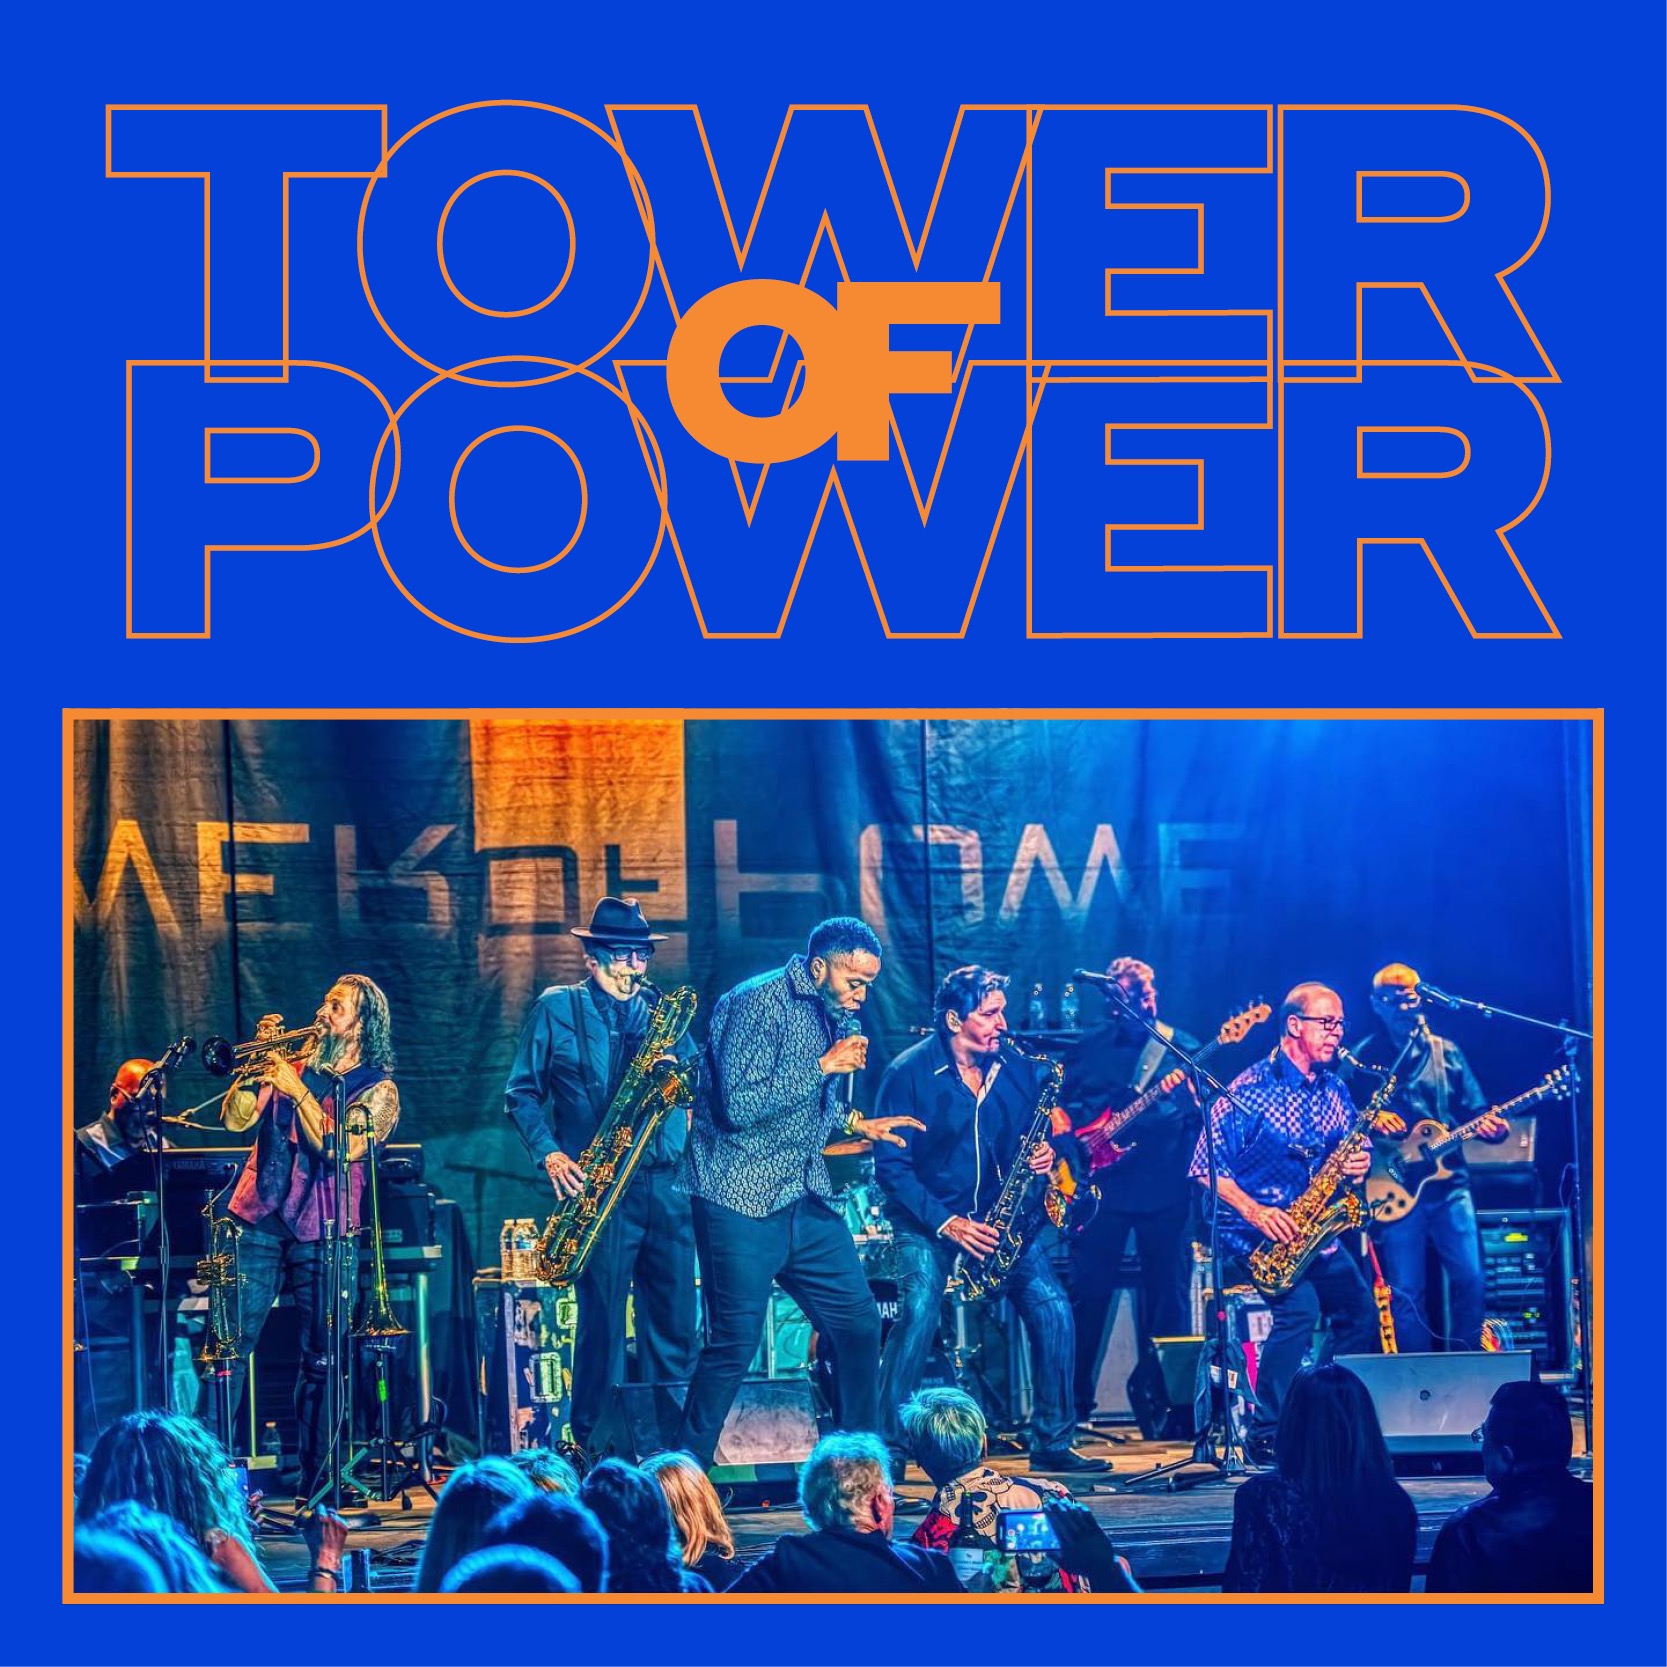 Tower of Power - BPO